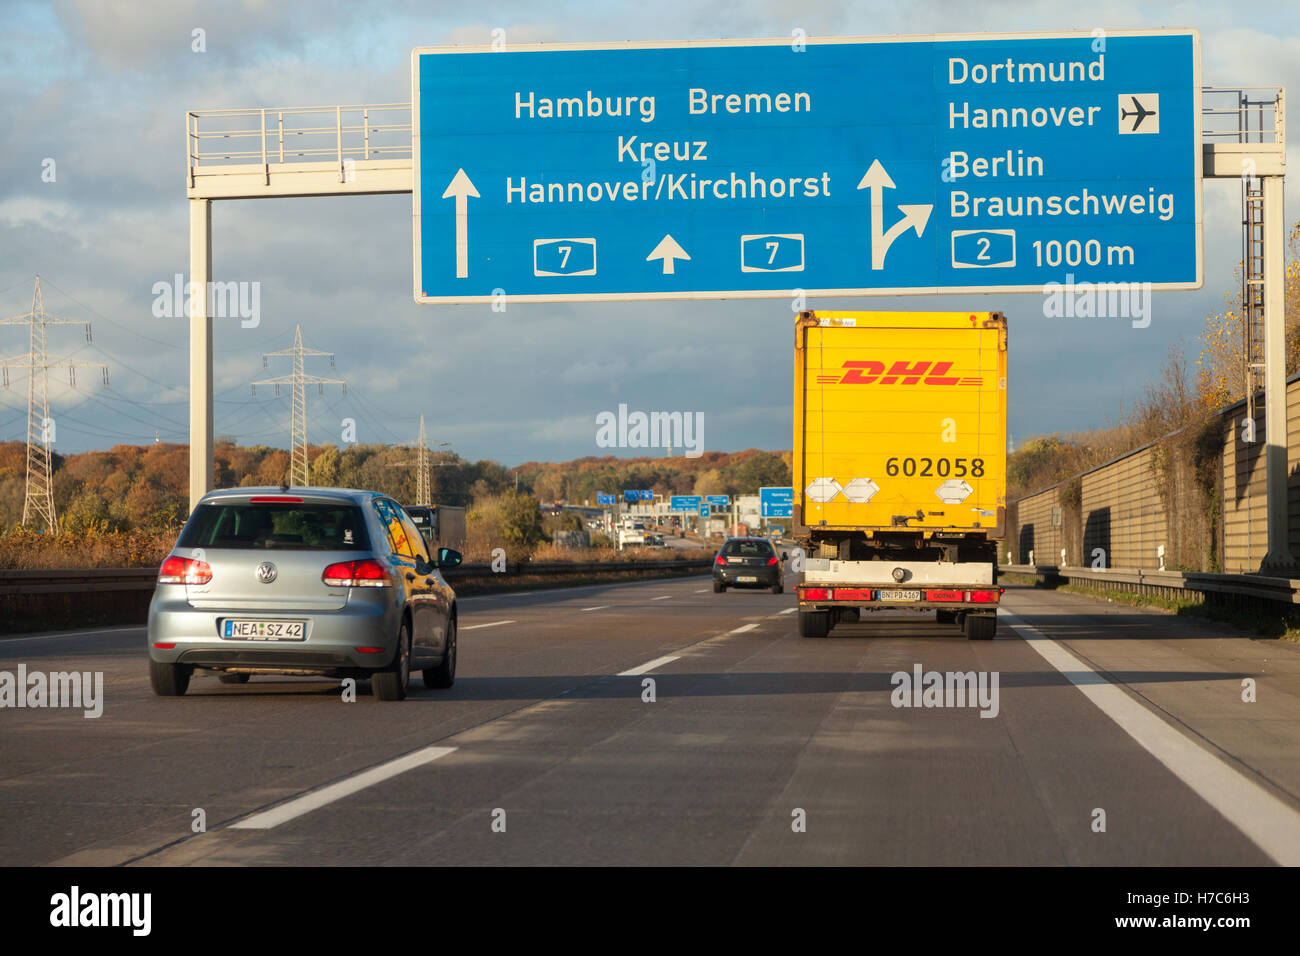 HANNOVER / Deutschland - 2. November 2016: internationale Paket-Service DHL LKW fährt auf deutschen Autobahn A 7 nahe Hannover / Germ Stockfoto